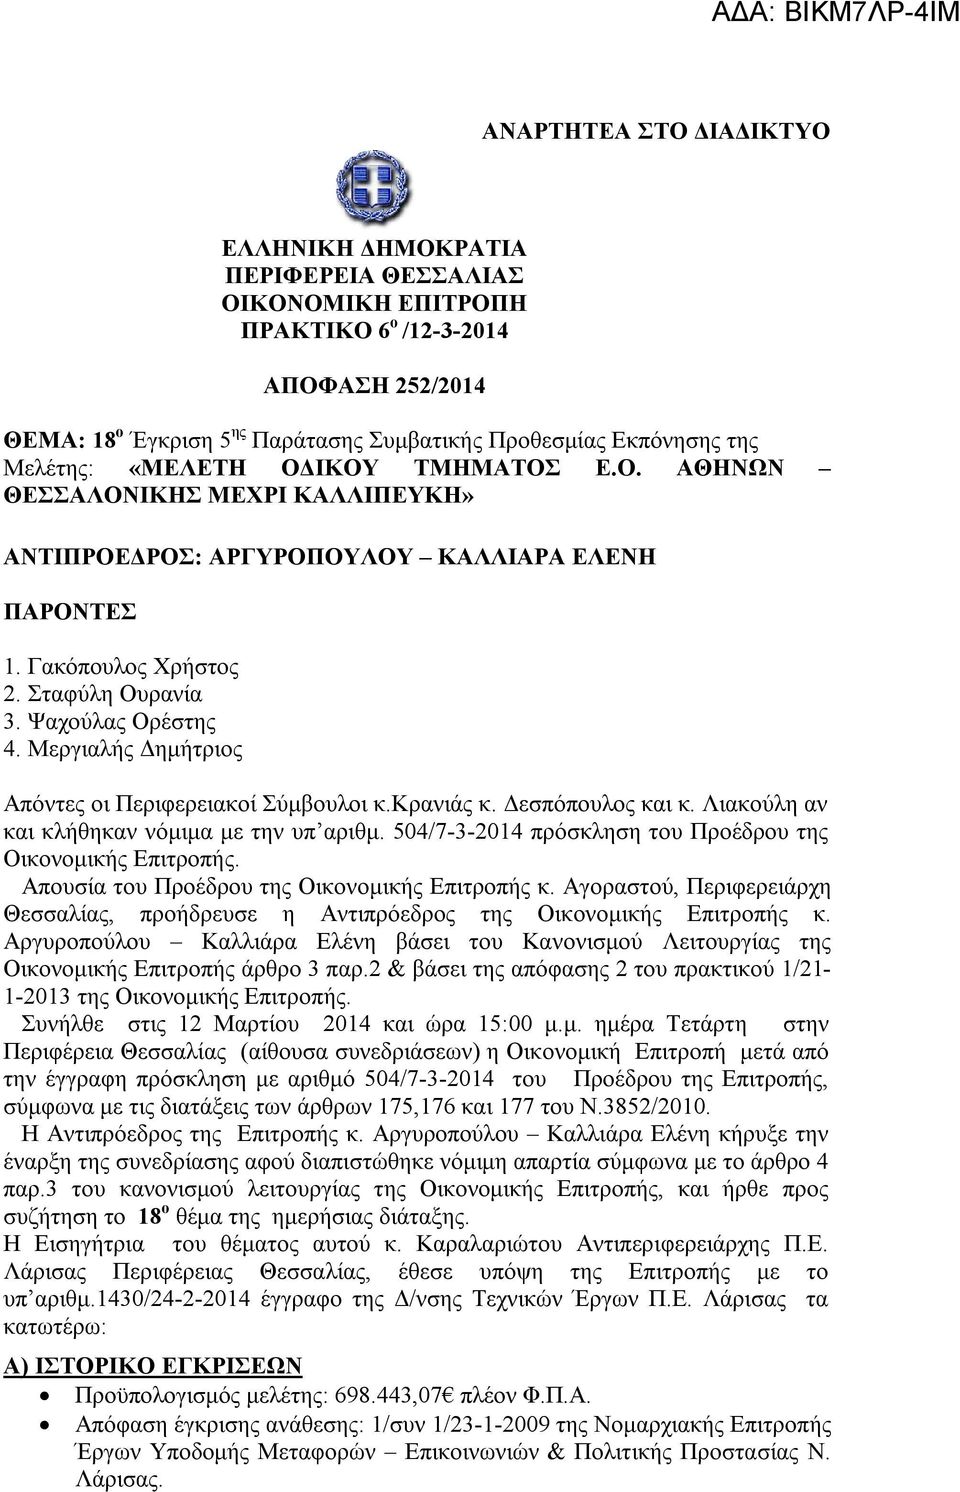 Μεργιαλής Δημήτριος Απόντες οι Περιφερειακοί Σύμβουλοι κ.κρανιάς κ. Δεσπόπουλος και κ. Λιακούλη αν και κλήθηκαν νόμιμα με την υπ αριθμ. 504/7-3-2014 πρόσκληση του Προέδρου της Οικονομικής Επιτροπής.